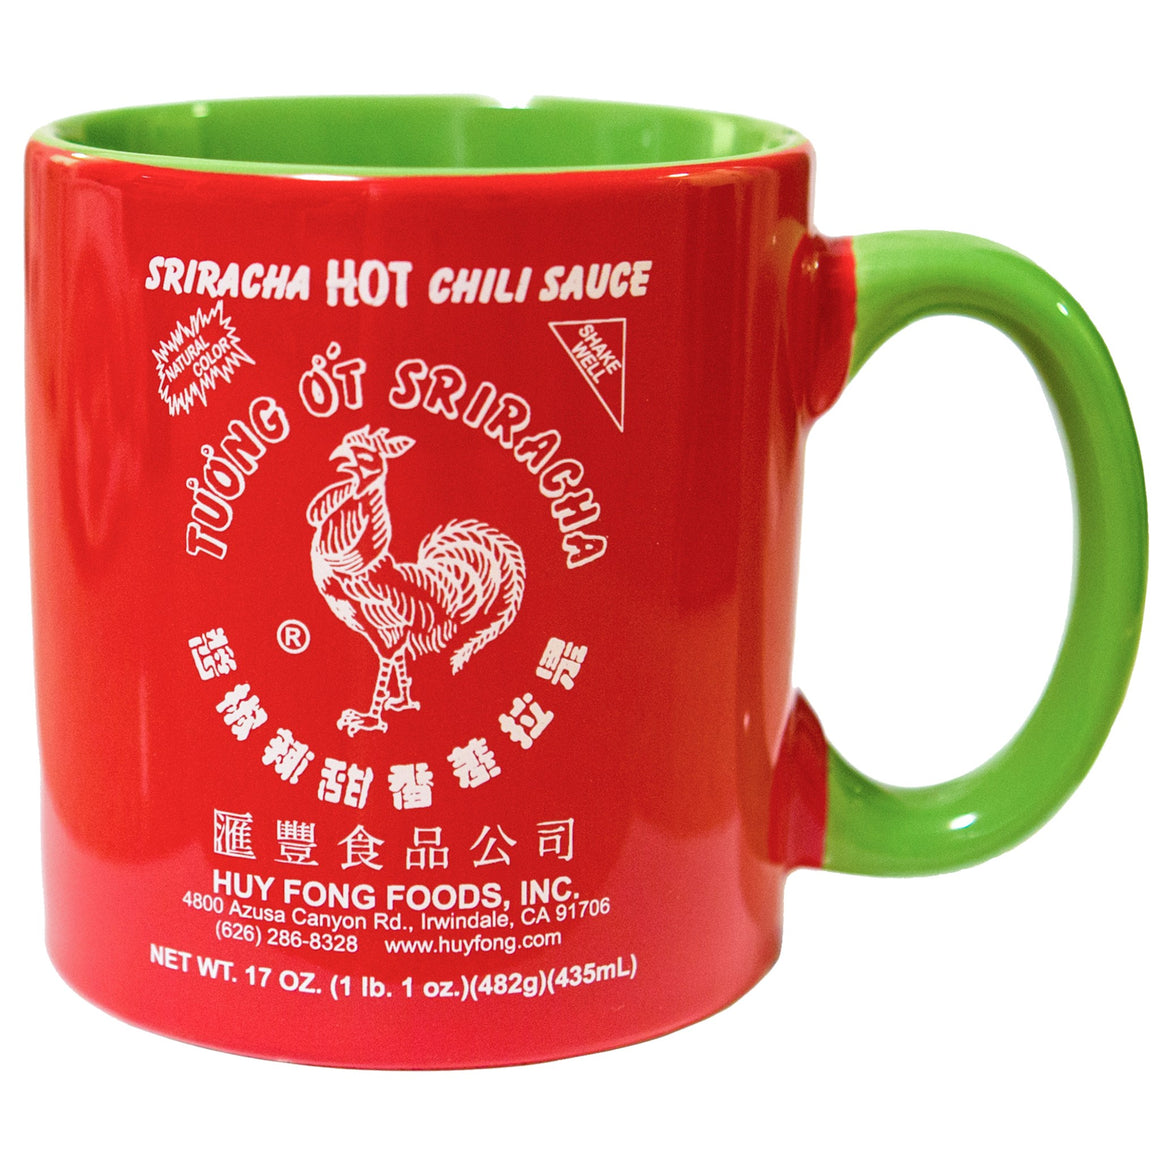 Huy Fong - Sriracha Hot Chili Sauce (Net Wt. 17 Oz.) - 3 Pack